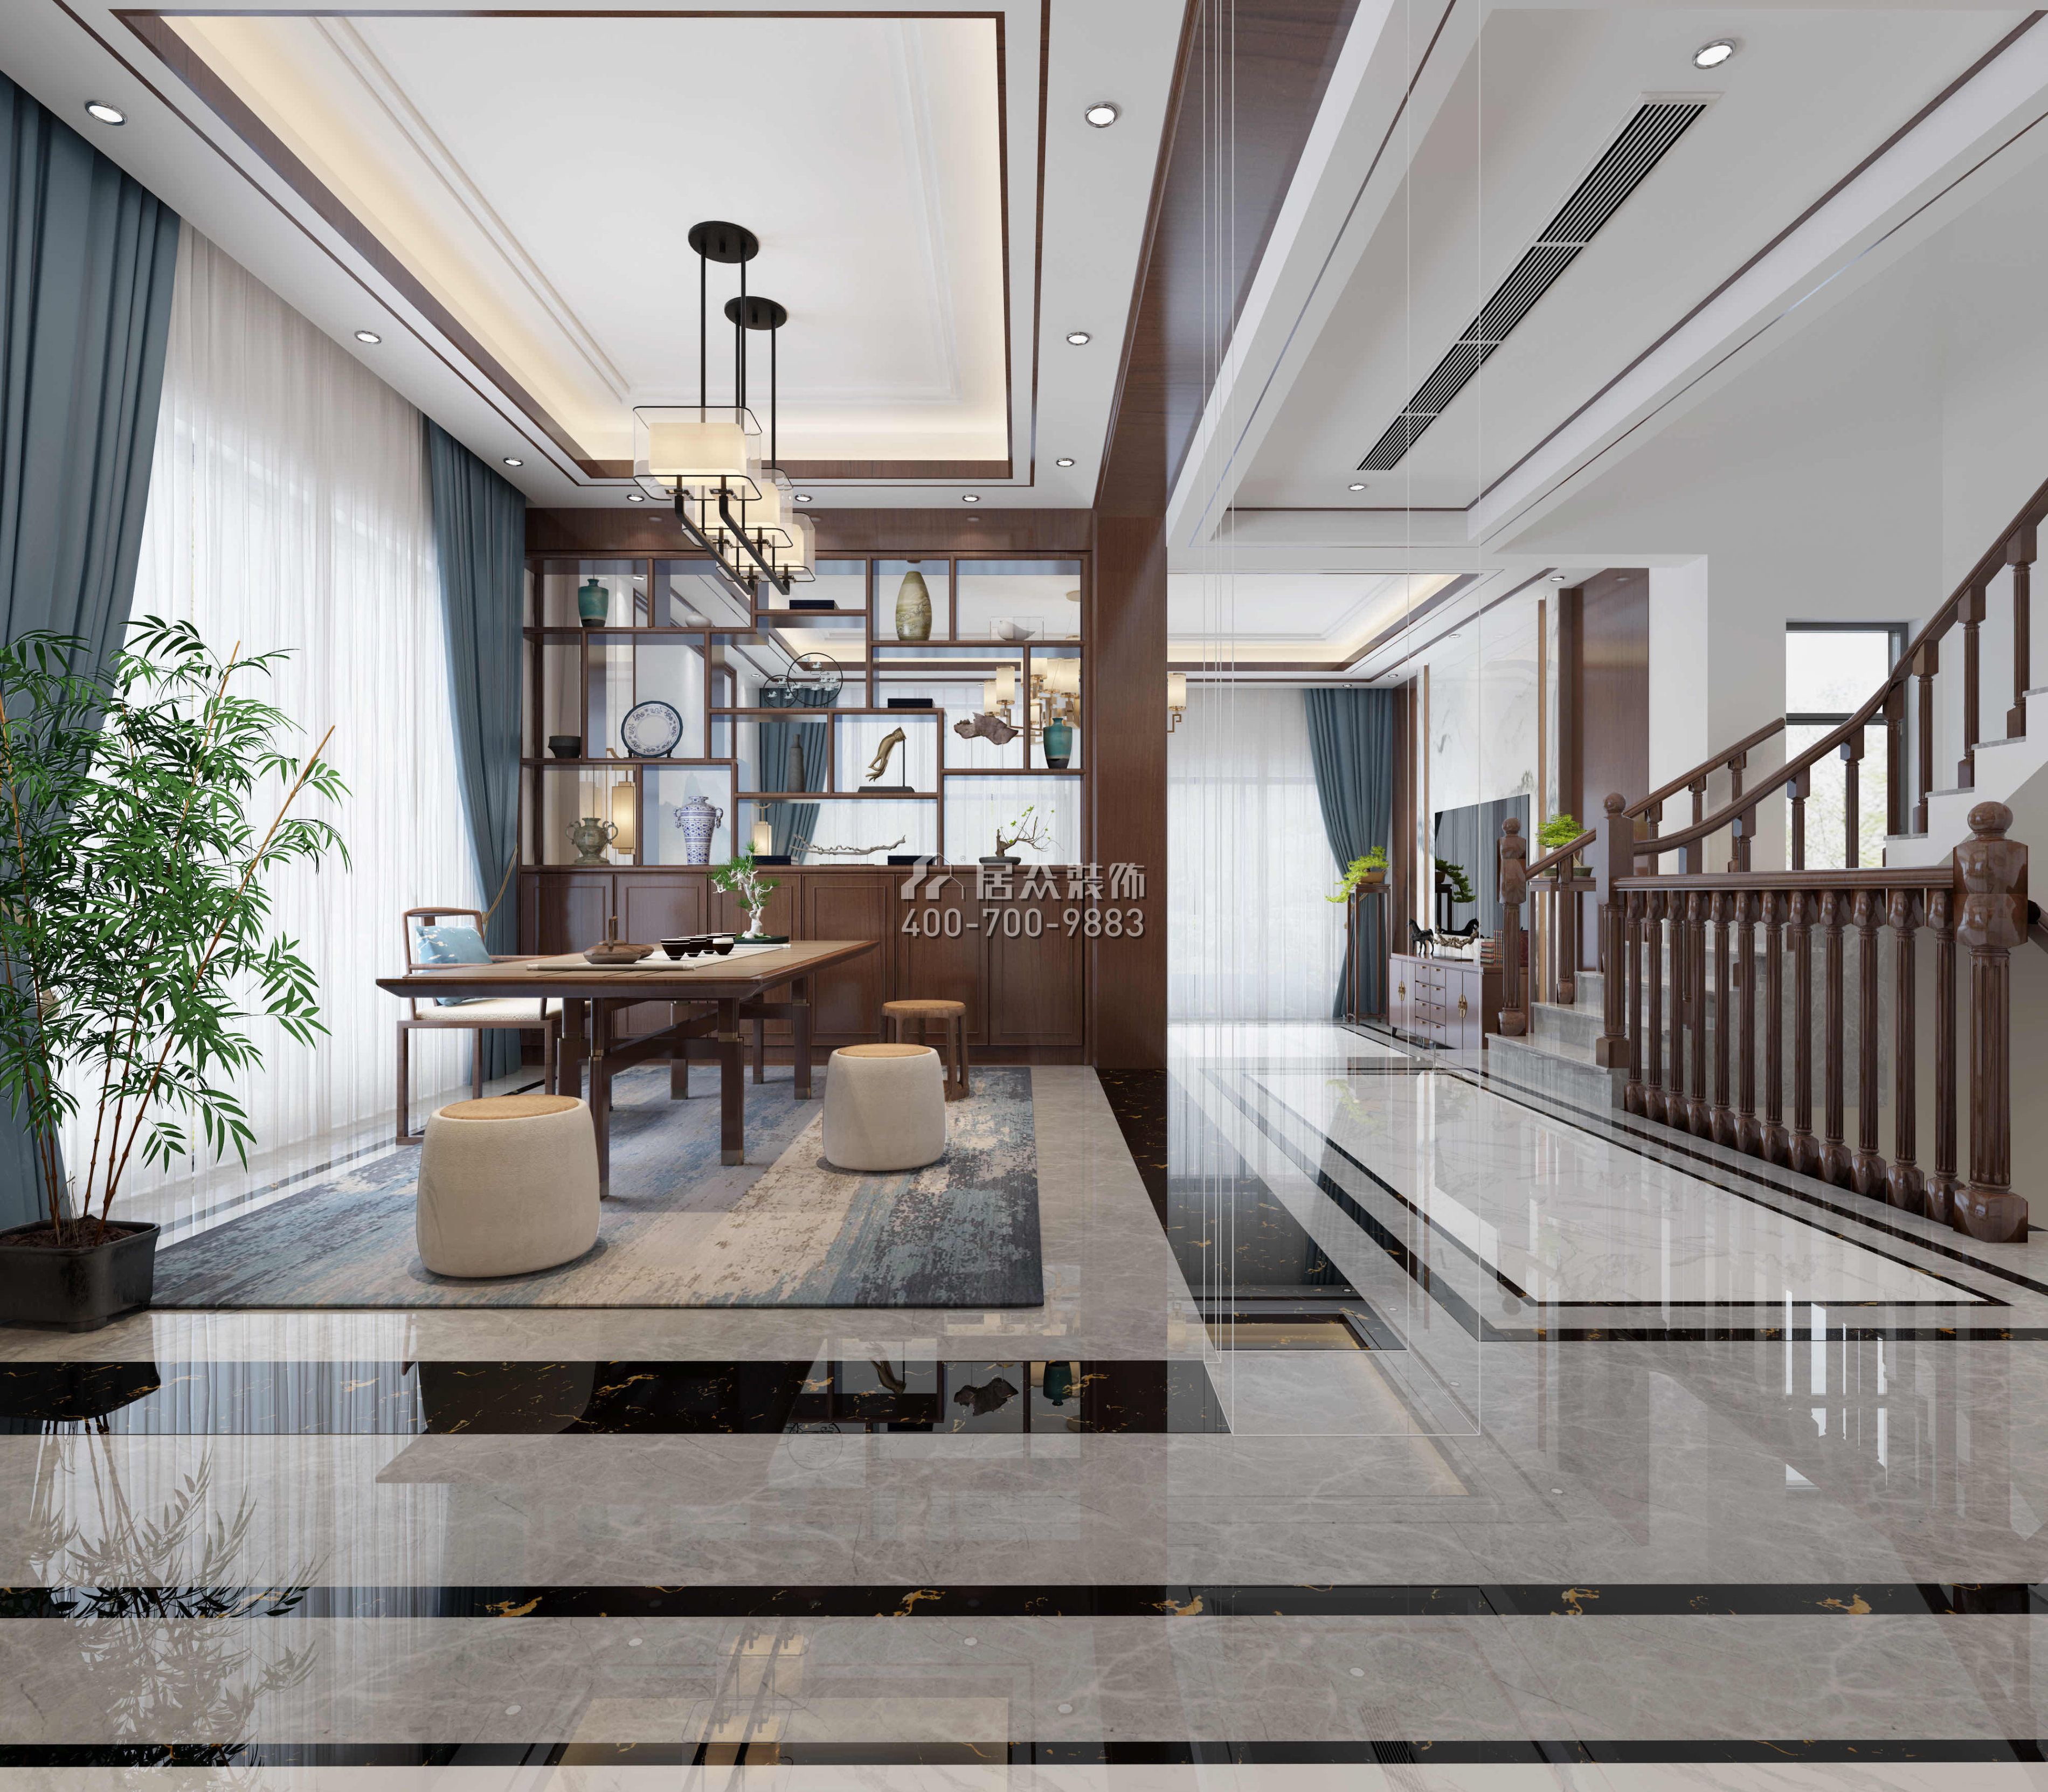 華發新城480平方米中式風格別墅戶型茶室裝修效果圖